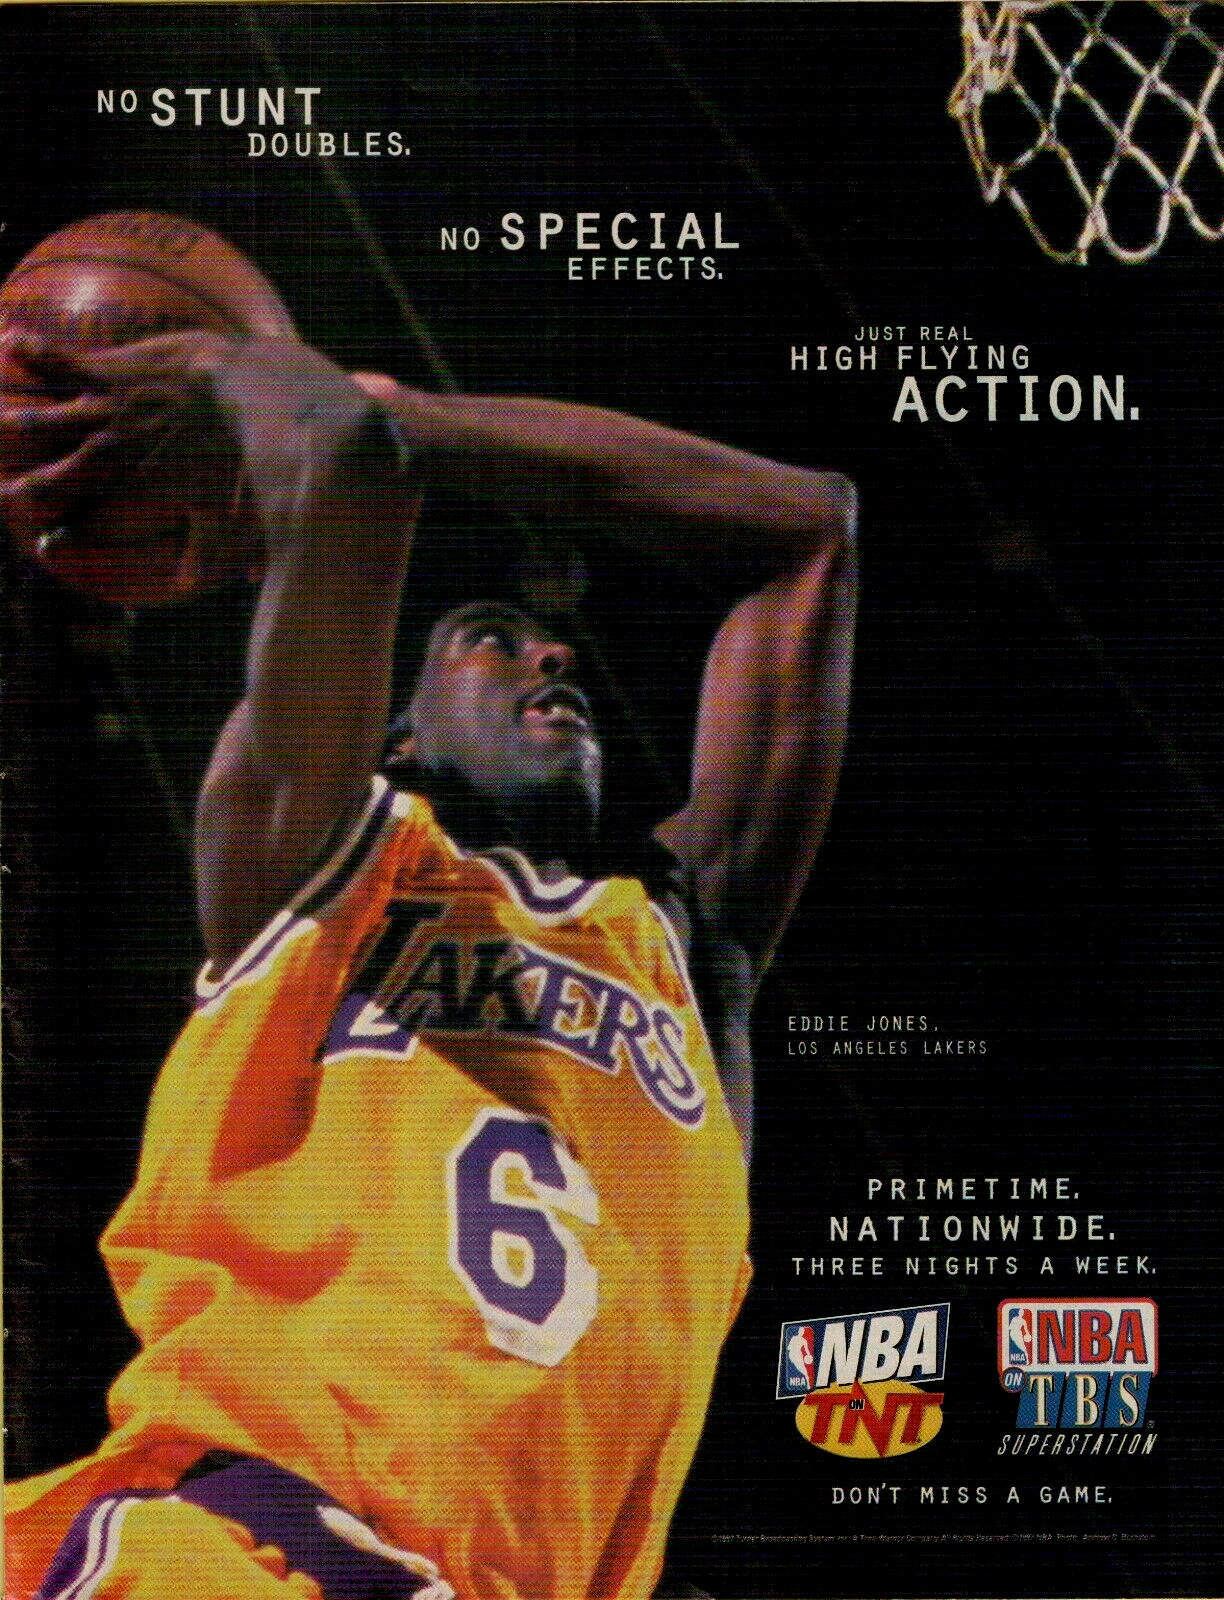 1997 NBA on TNT TBS LA Lakers Eddie Jones No Stunt Double photo VINTAGE PRINT AD